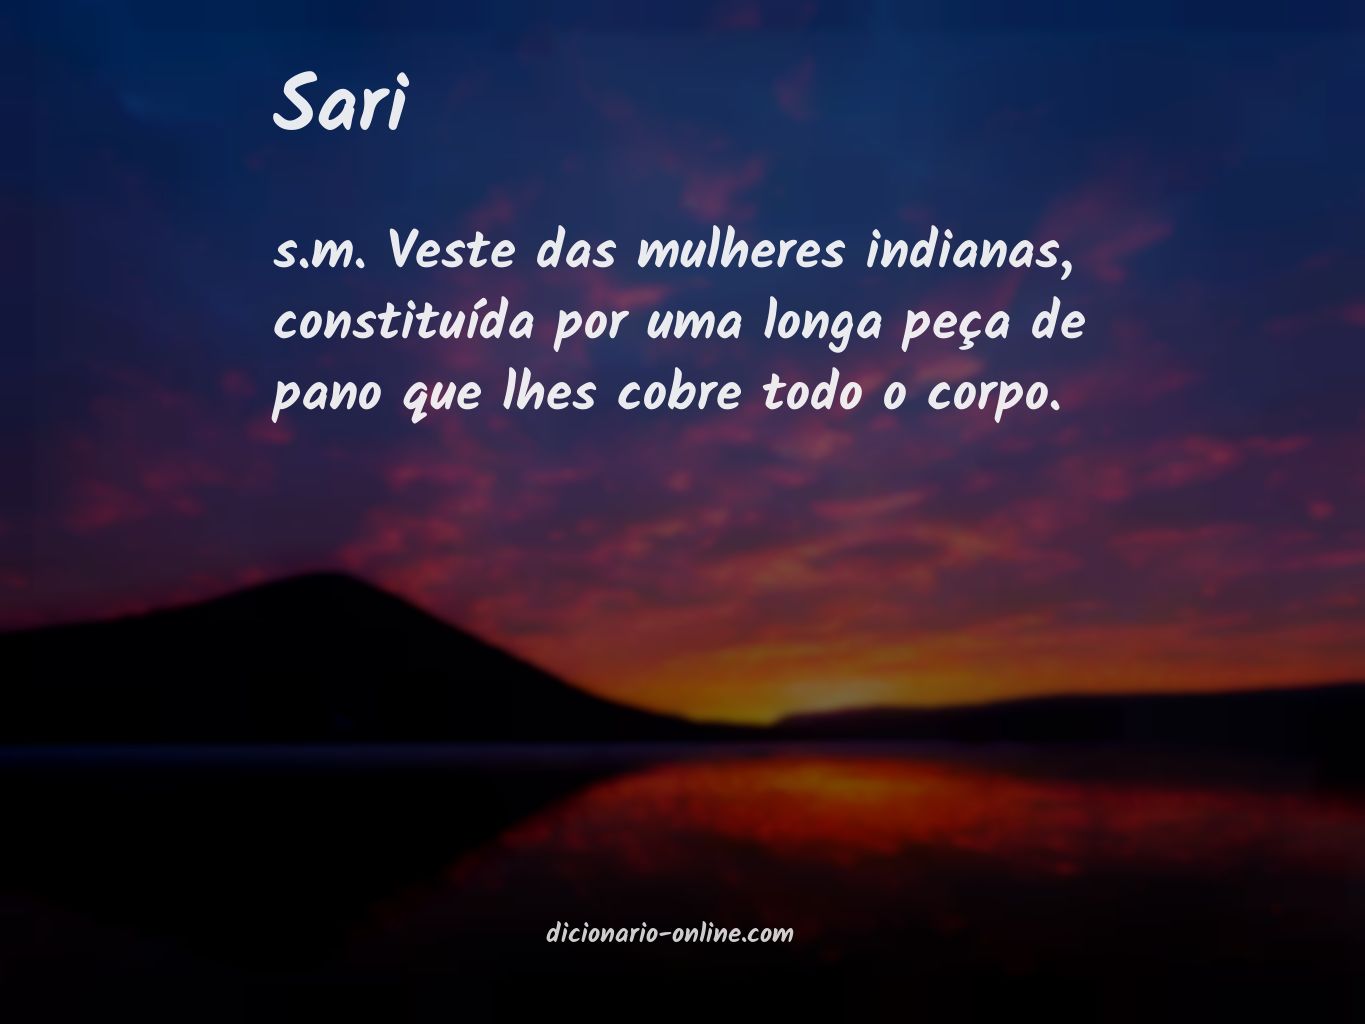 Significado de sari